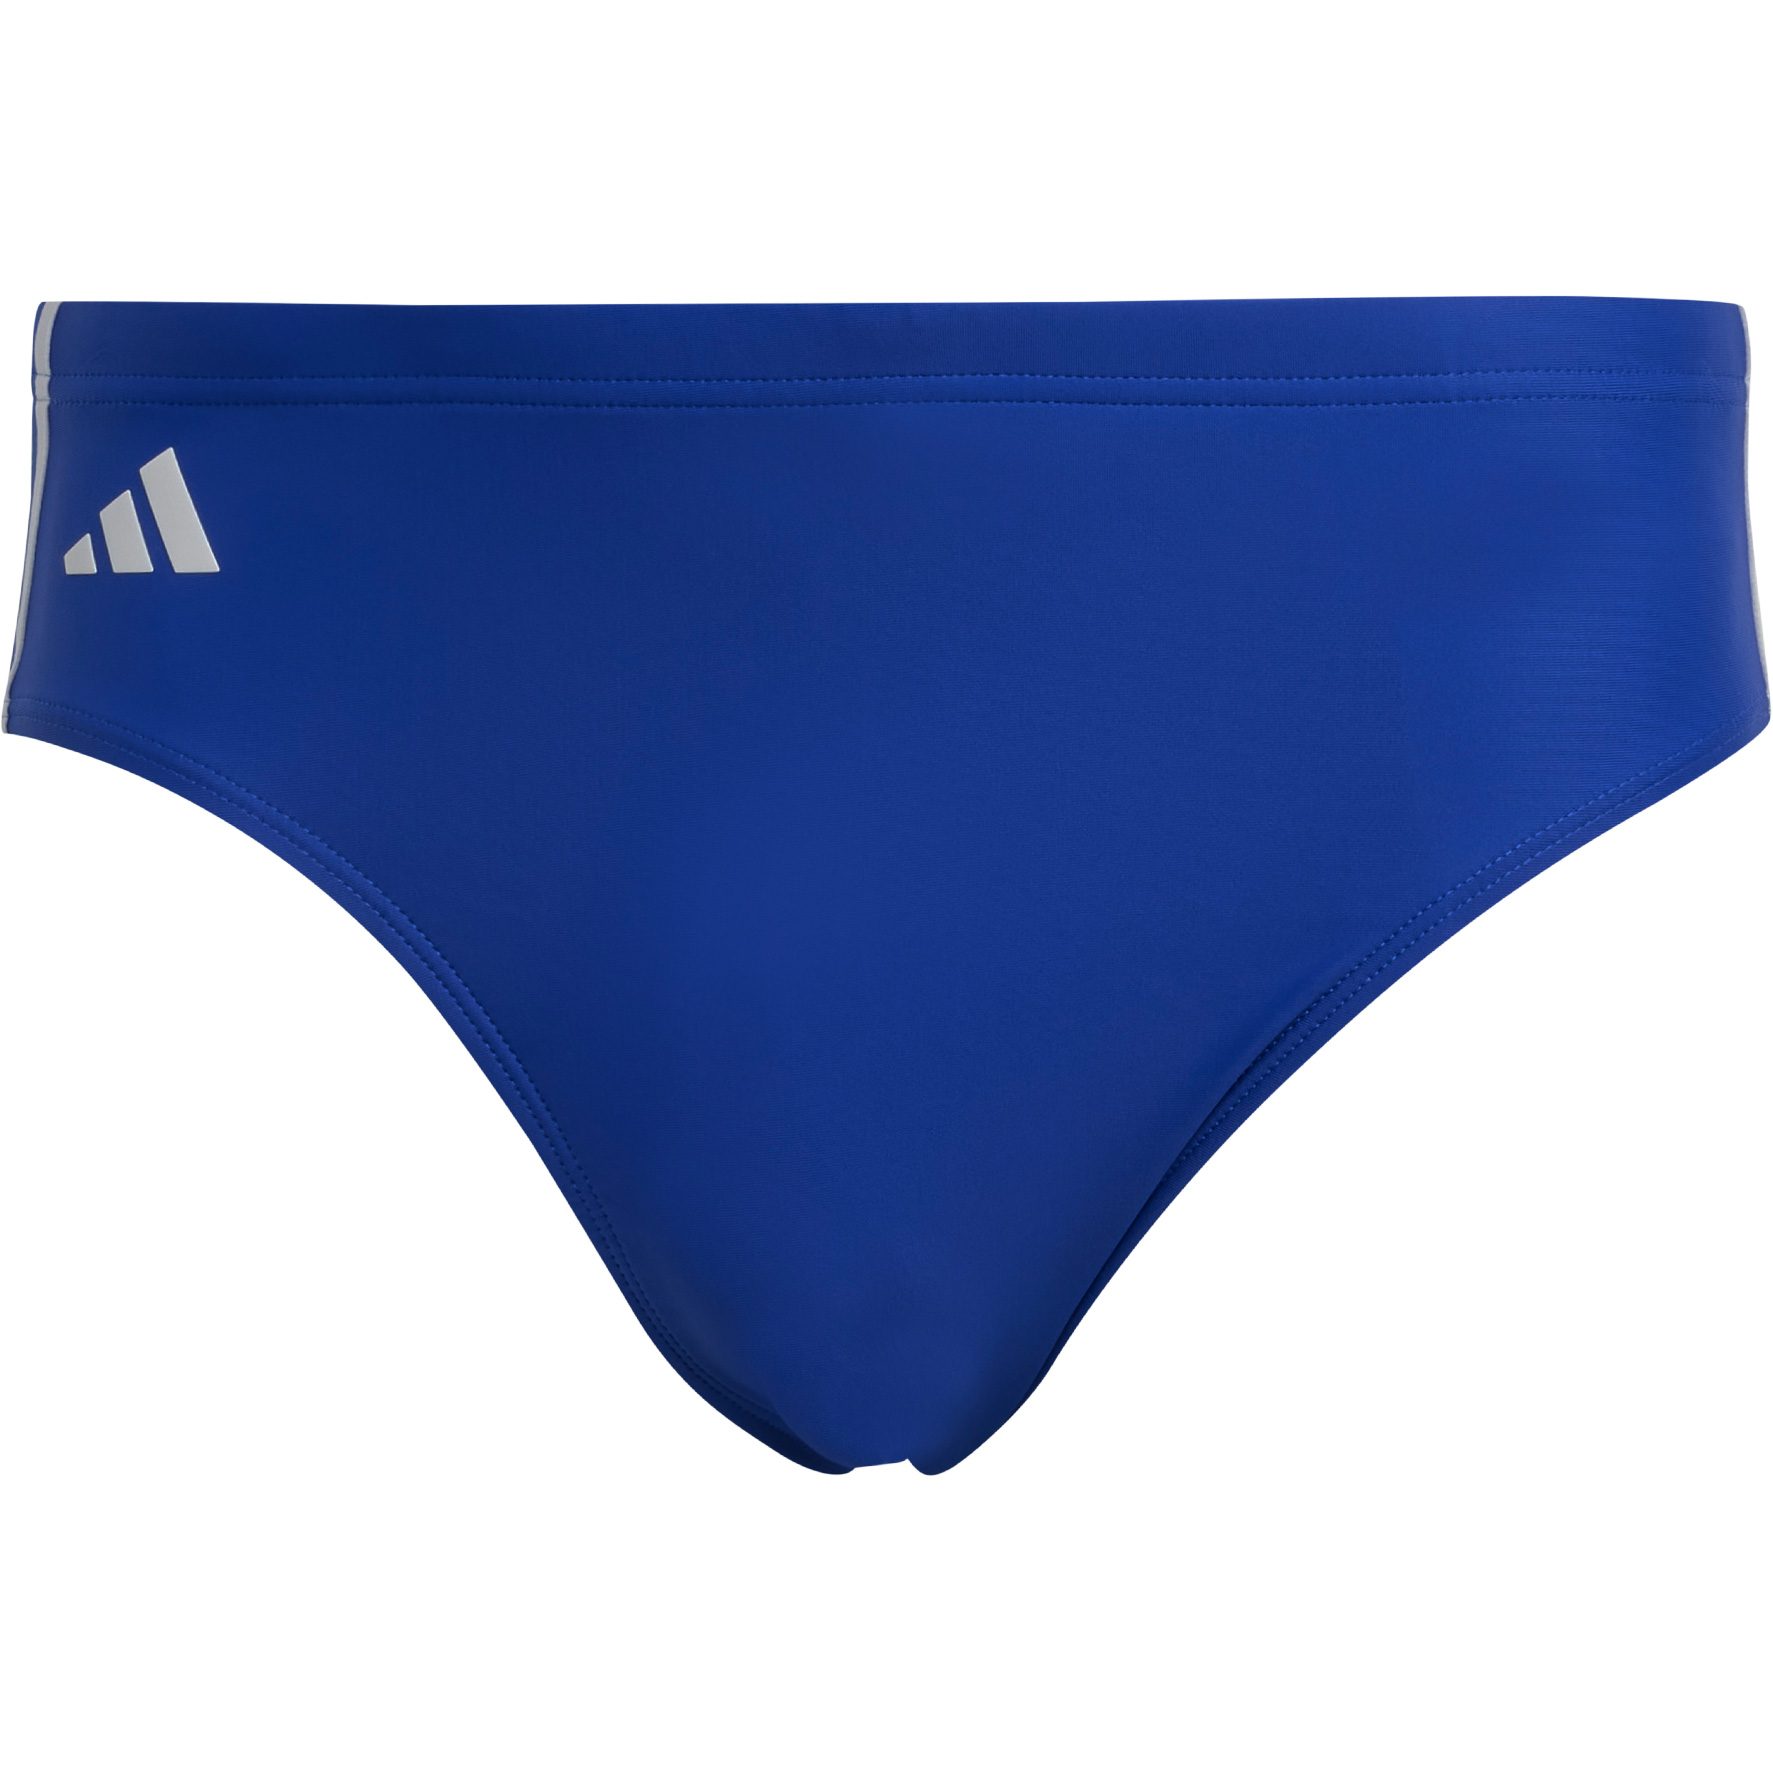 adidas - Classic 3-Streifen Badehose Herren semi lucid blue kaufen im Sport  Bittl Shop